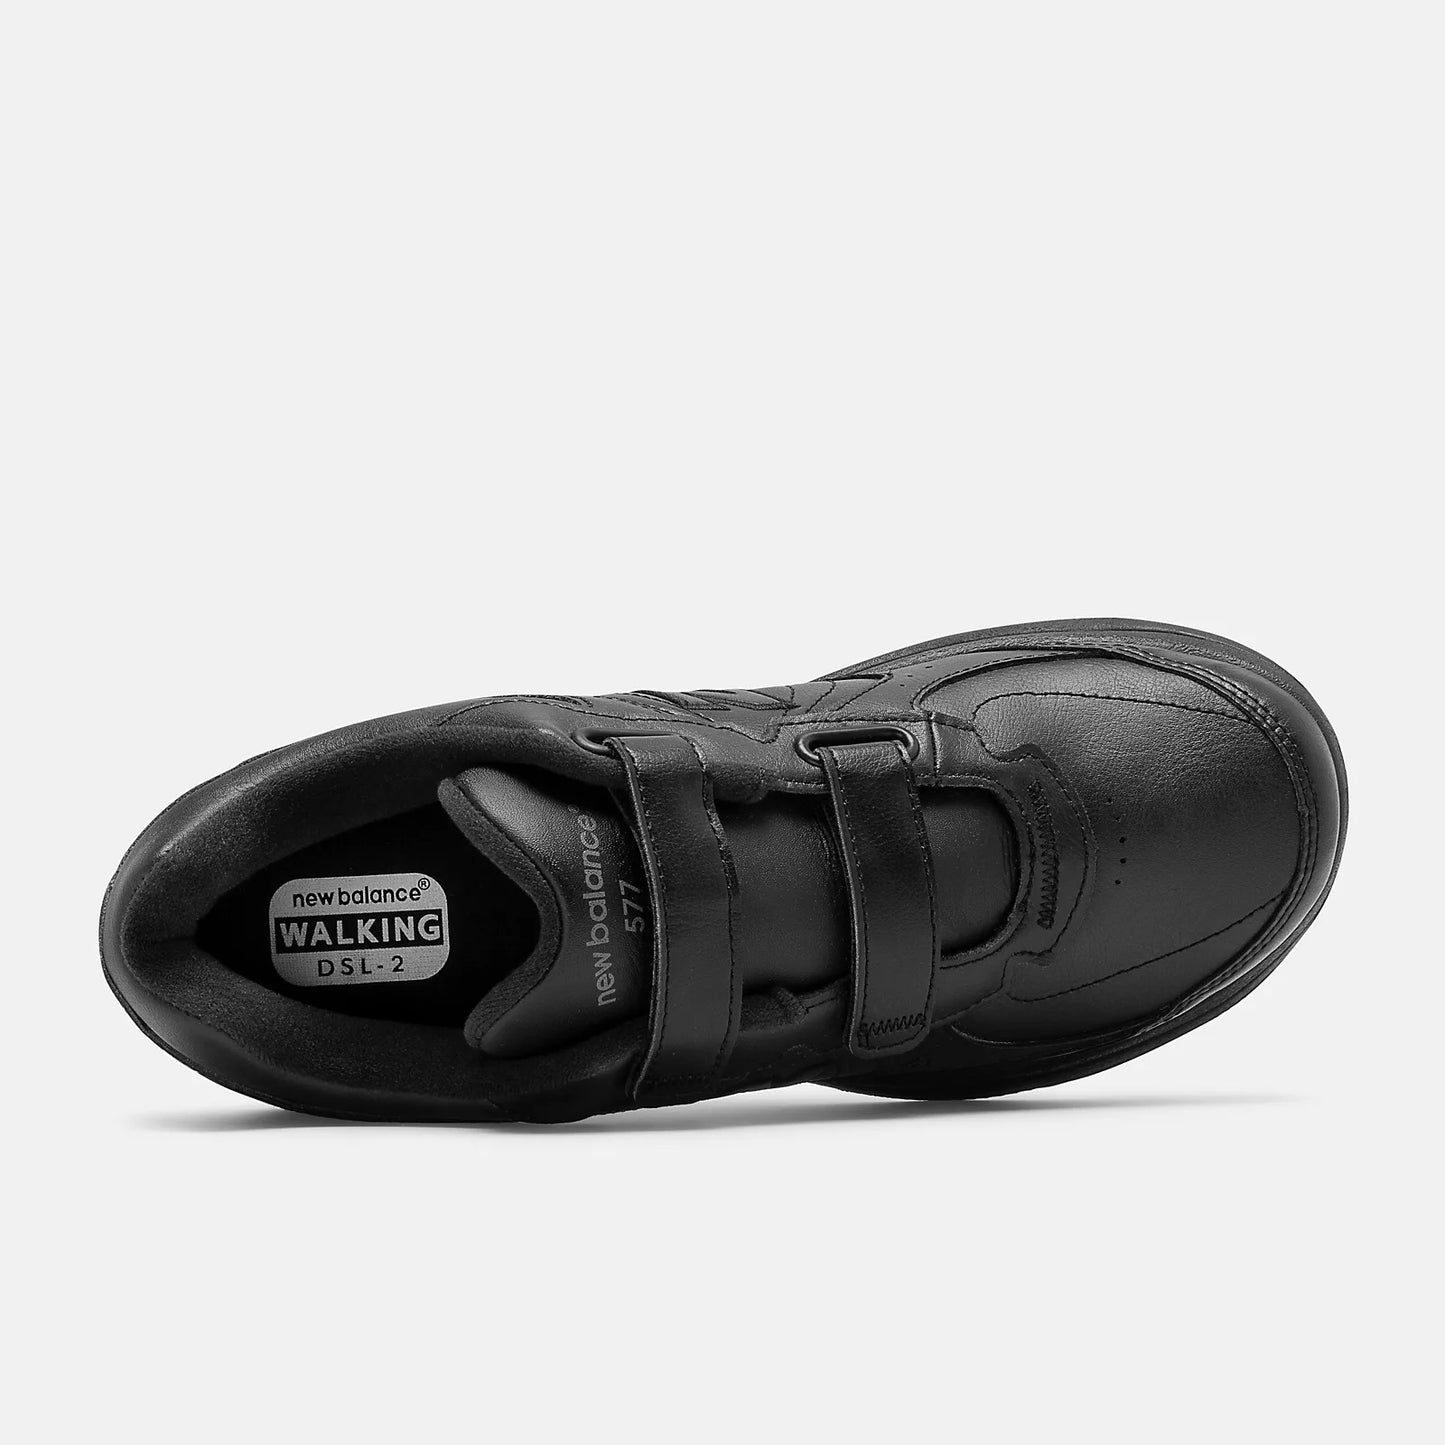 New Balance - Men's 577 Walker - Velcro Strap - Black